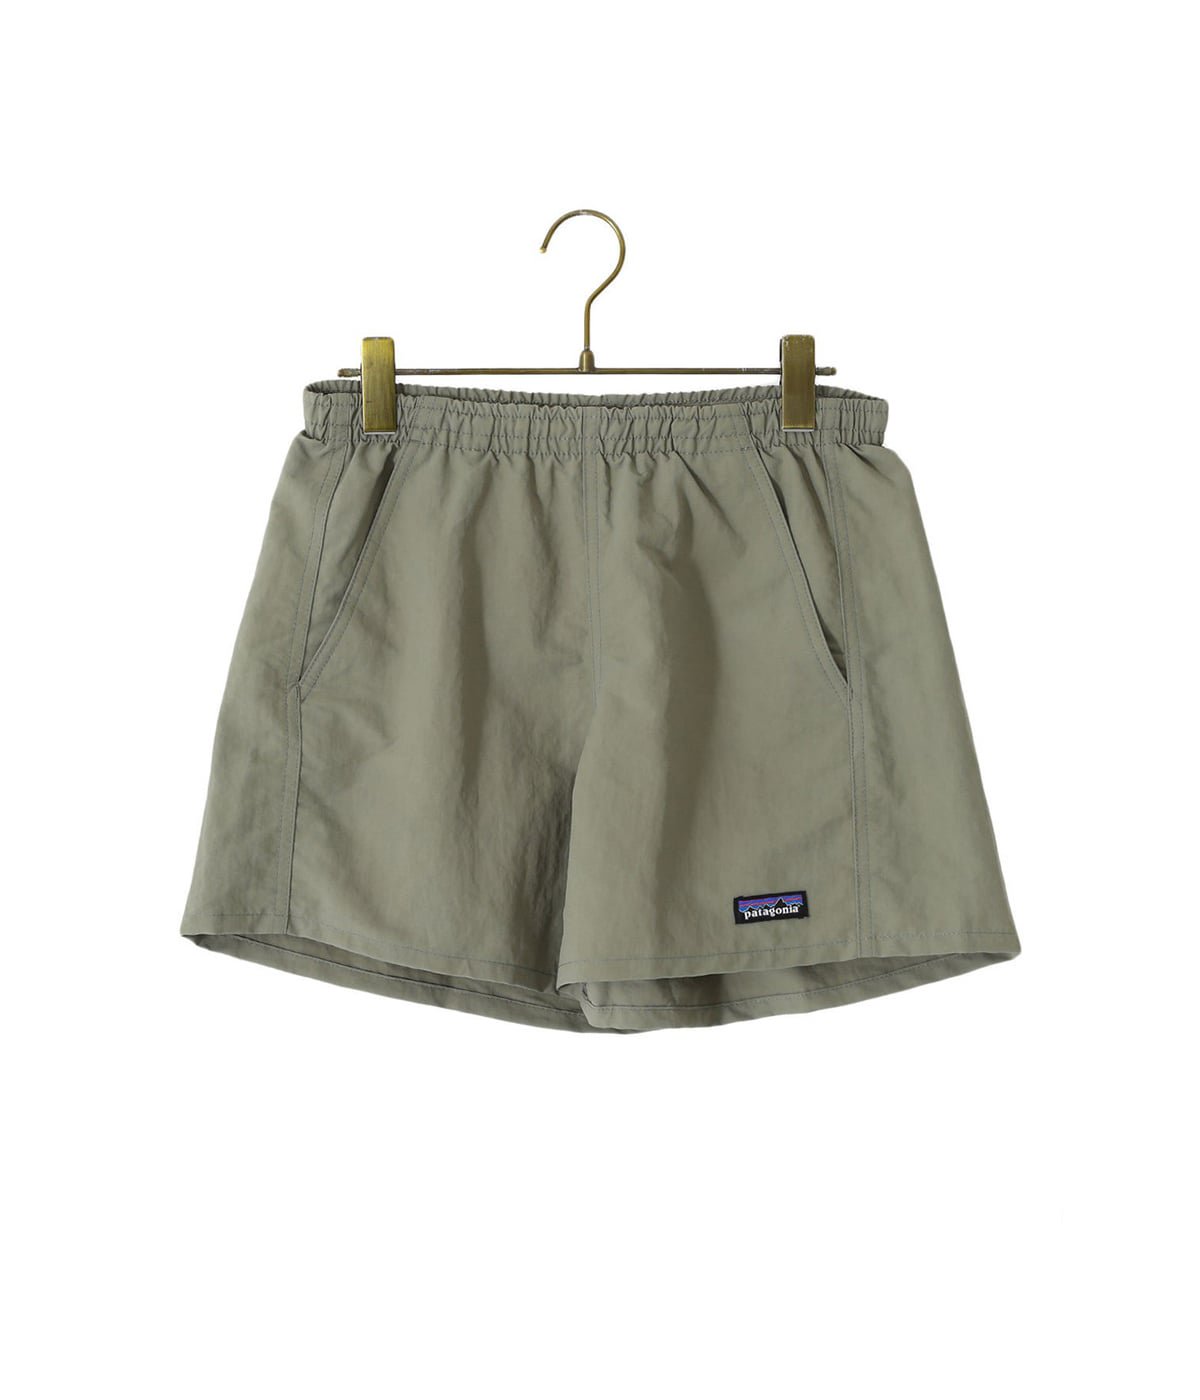 【レディース】W's Baggies Shorts - 5 in. -FNDG-